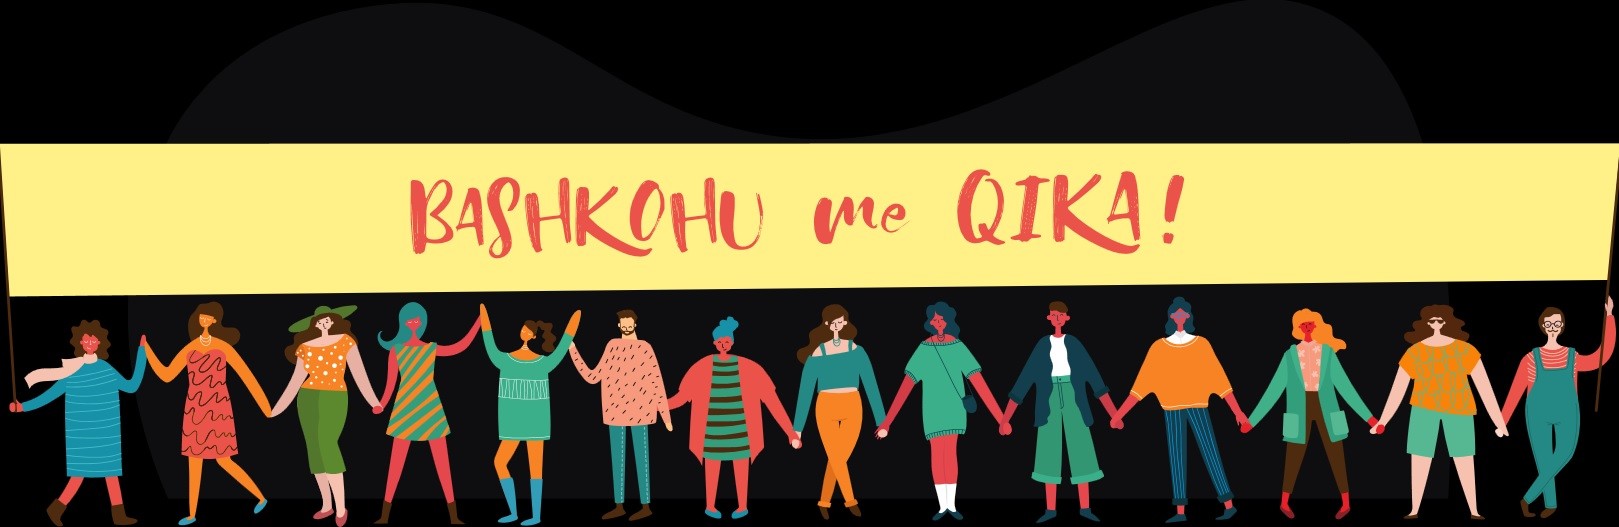 QIKA organizon aksion simbolik për shënimin e Ditës Ndërkombëtare të Gruas